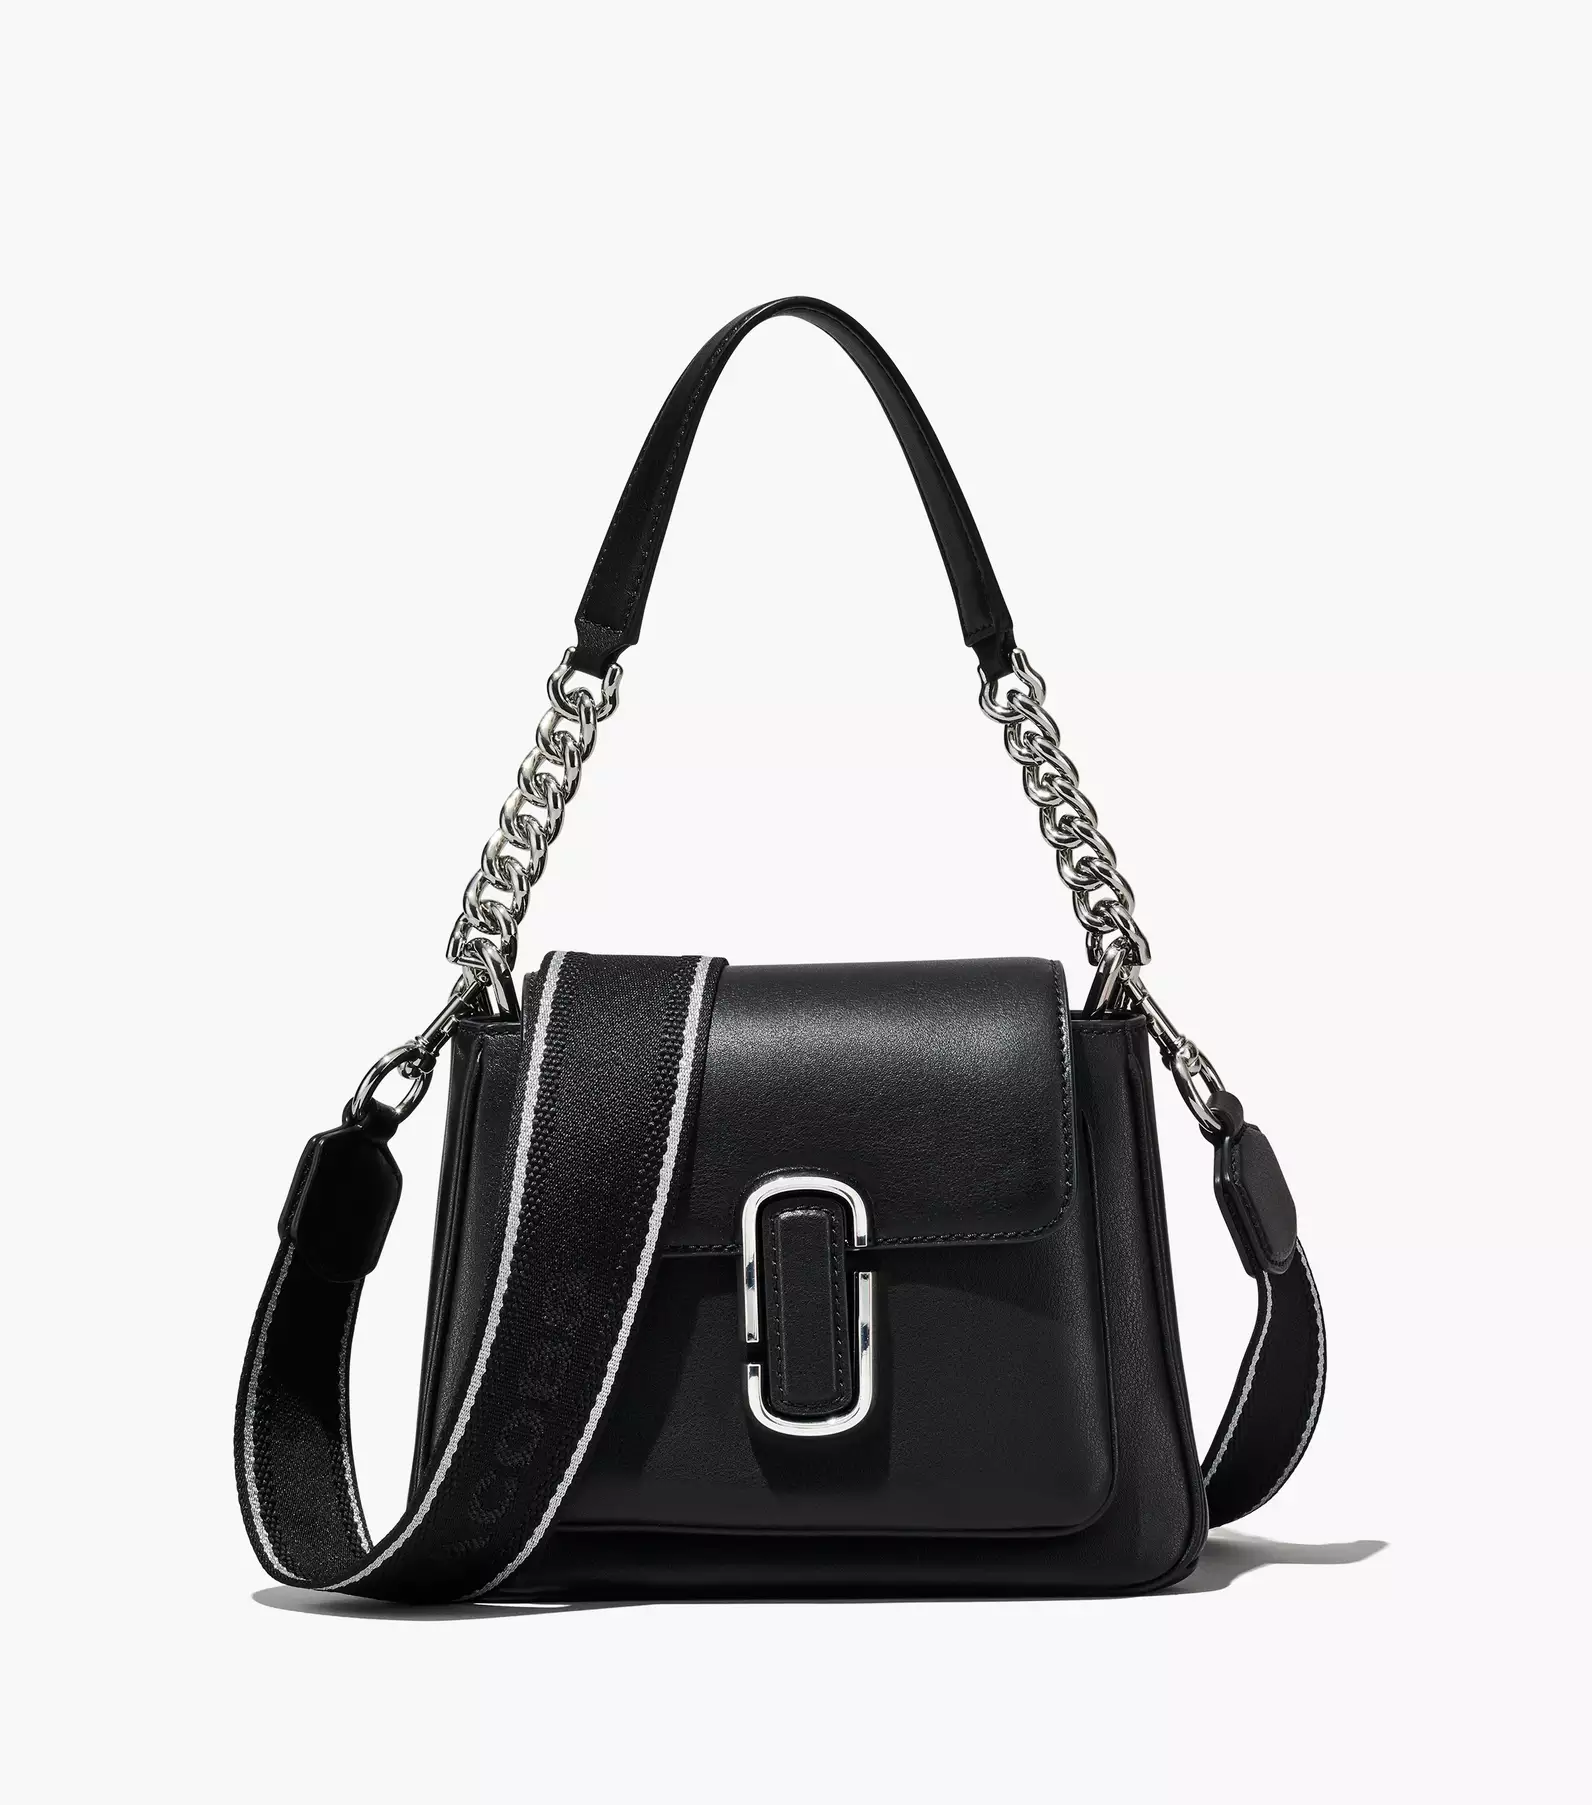 Shop Marc Jacobs Sling Bag Original online